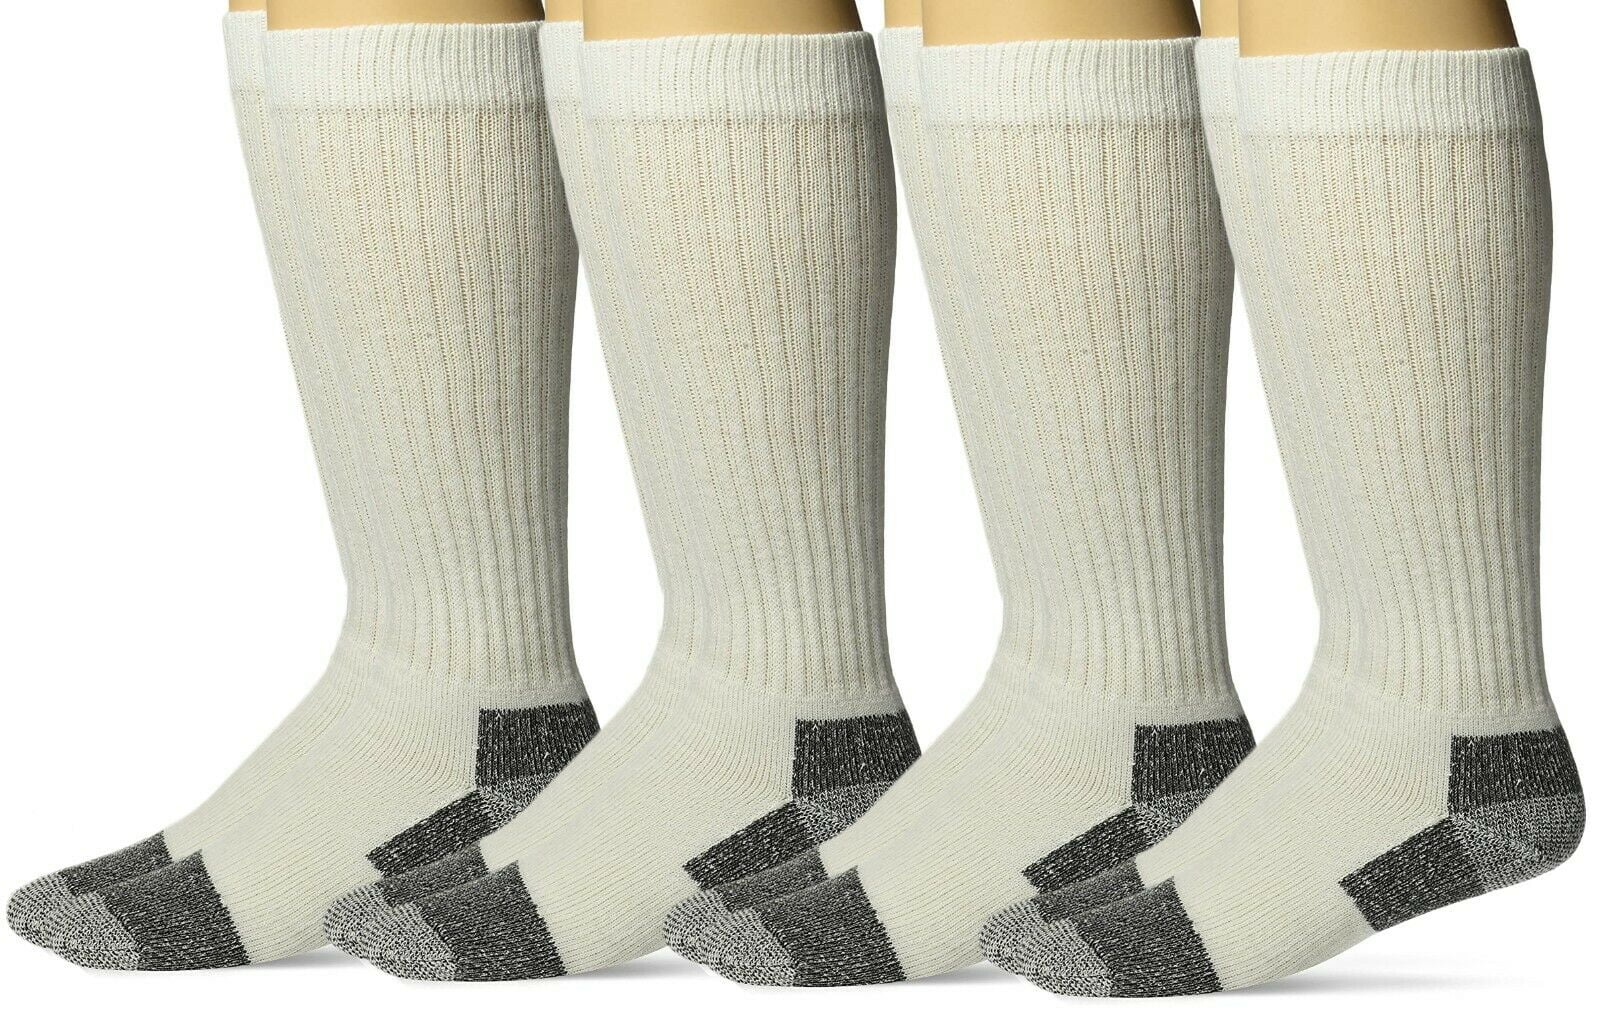 12-15 Mens NWT Thermal Boot Socks BIG TALL WIDE 3prs Gray/Black Lightweight XL